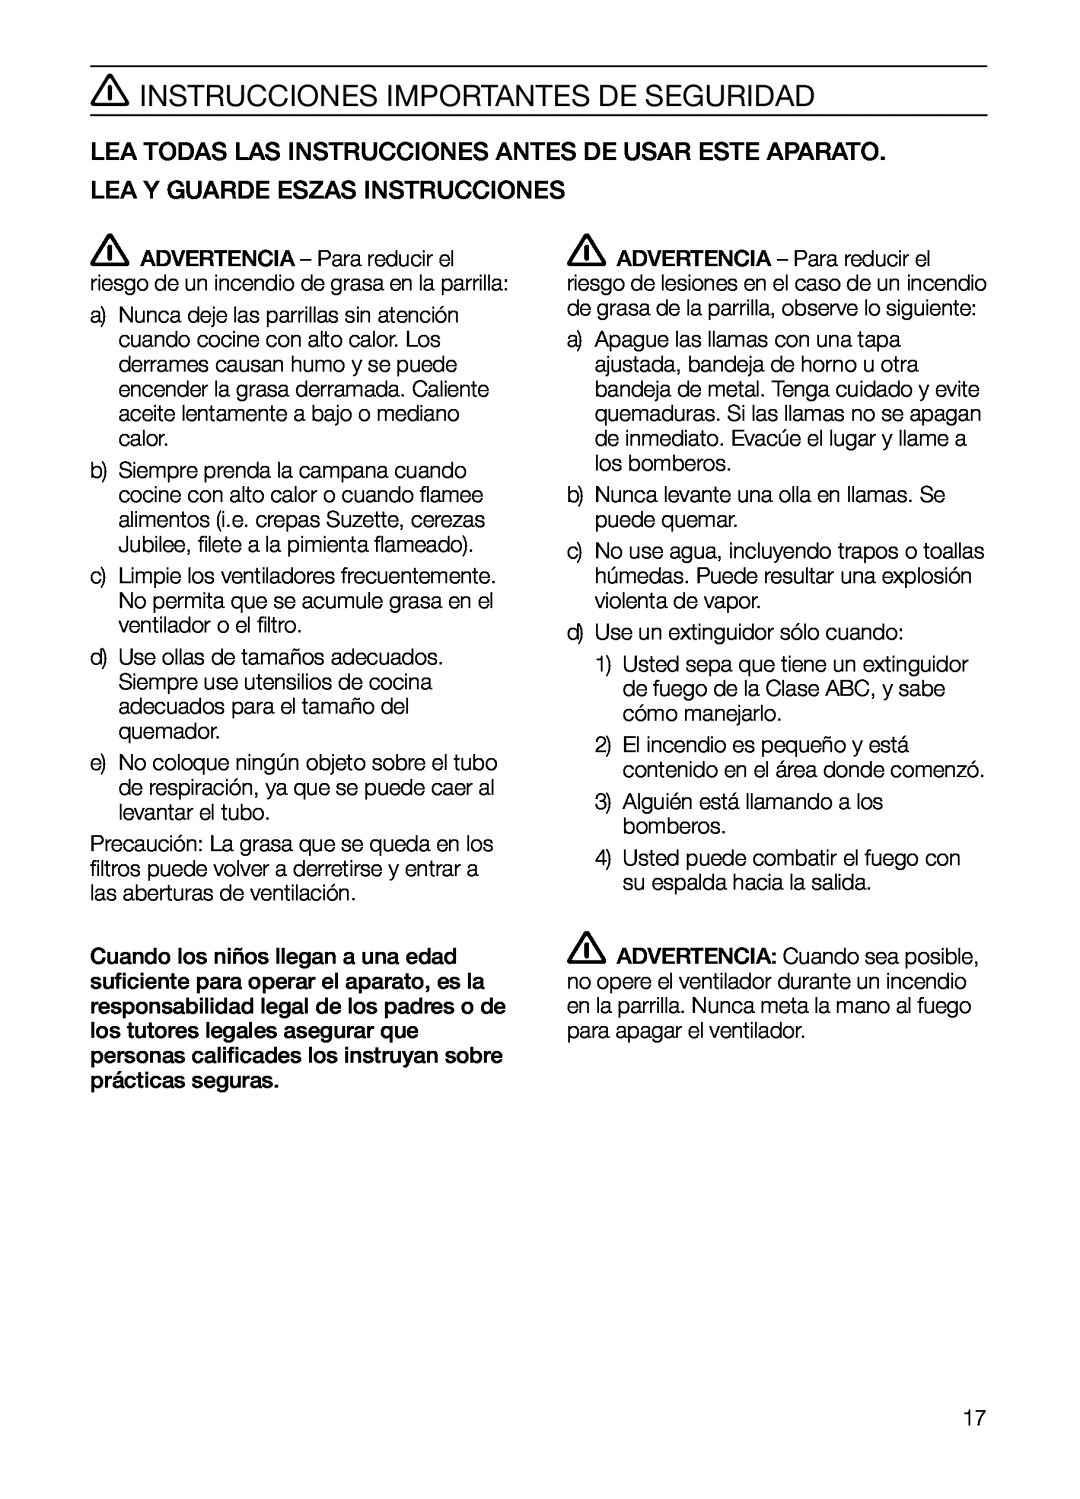 Bosch Appliances DHD Series manual Instrucciones Importantes De Seguridad, Lea Y Guarde Eszas Instrucciones 